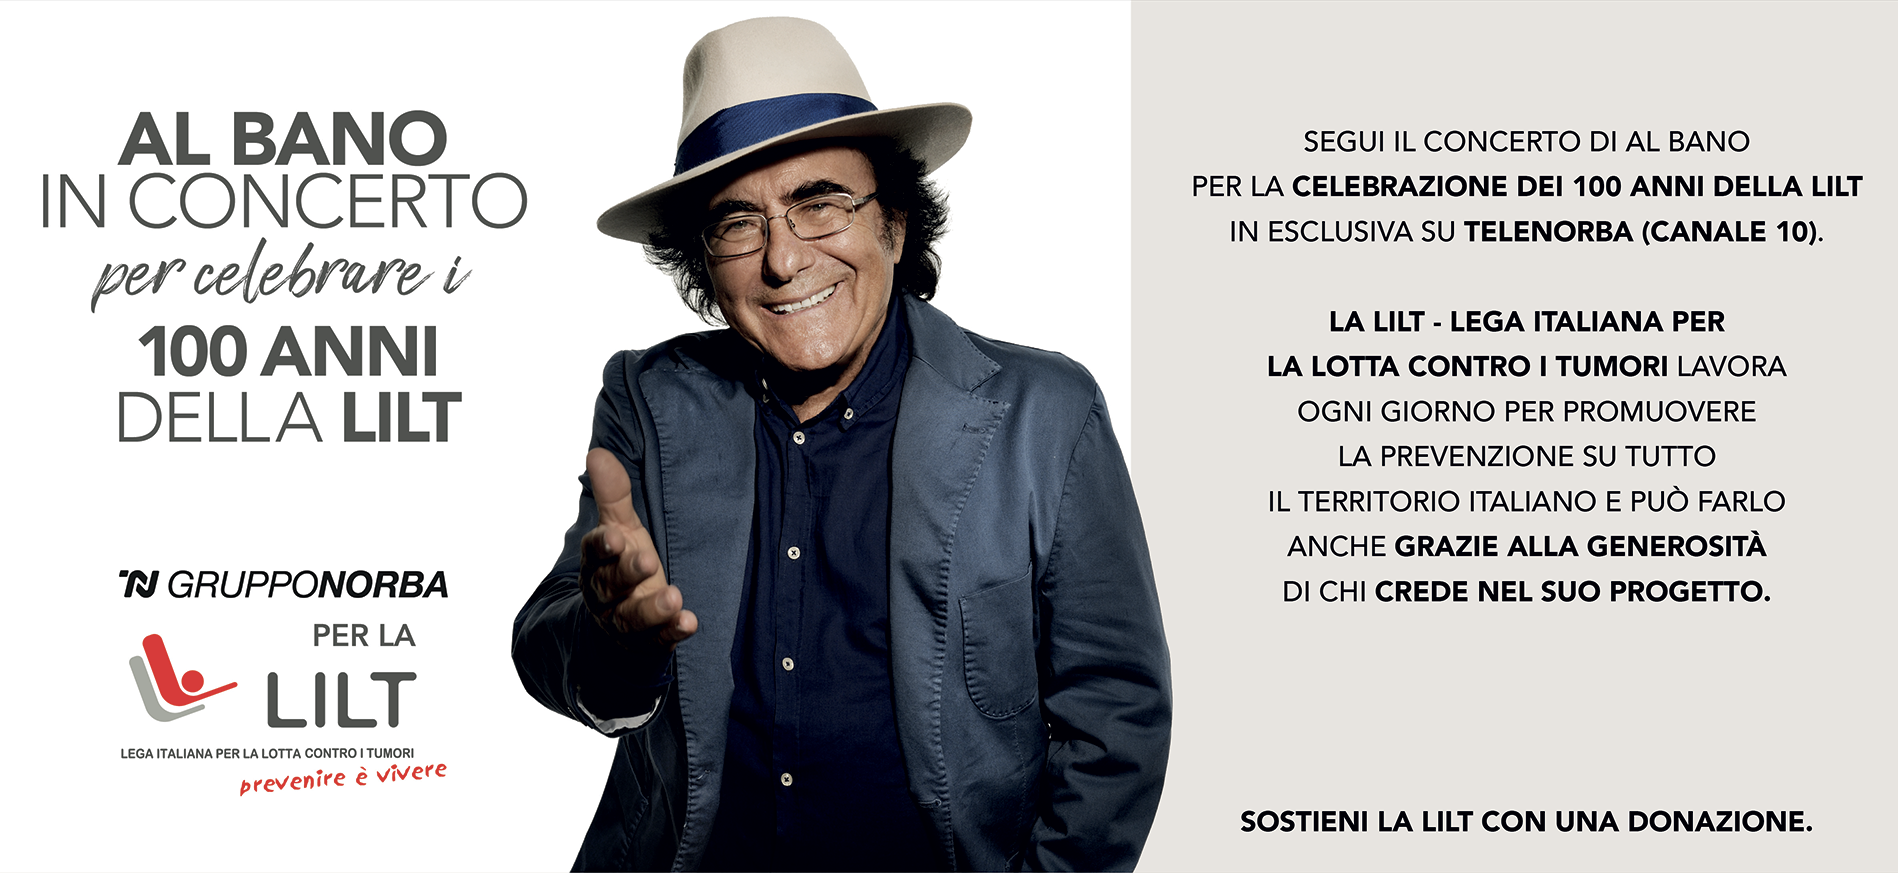 Al Bano in concerto per celebrare i 100 anni della LILT - 24 ottobre al teatro Petruzzelli di Bari